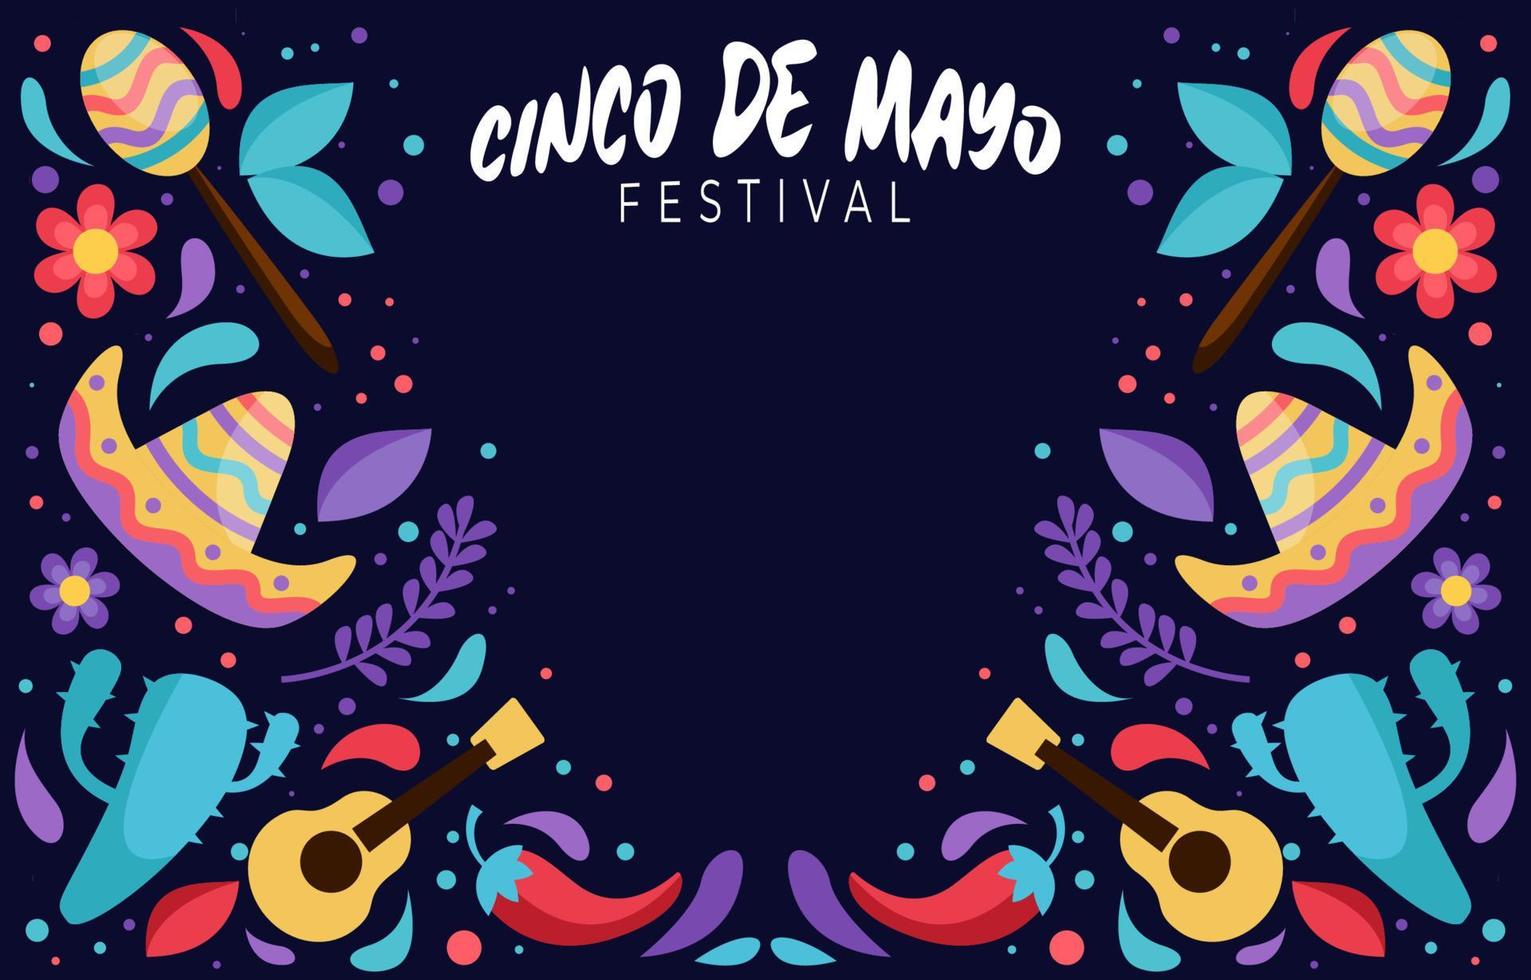 Cinco De Mayo Festival Background vector